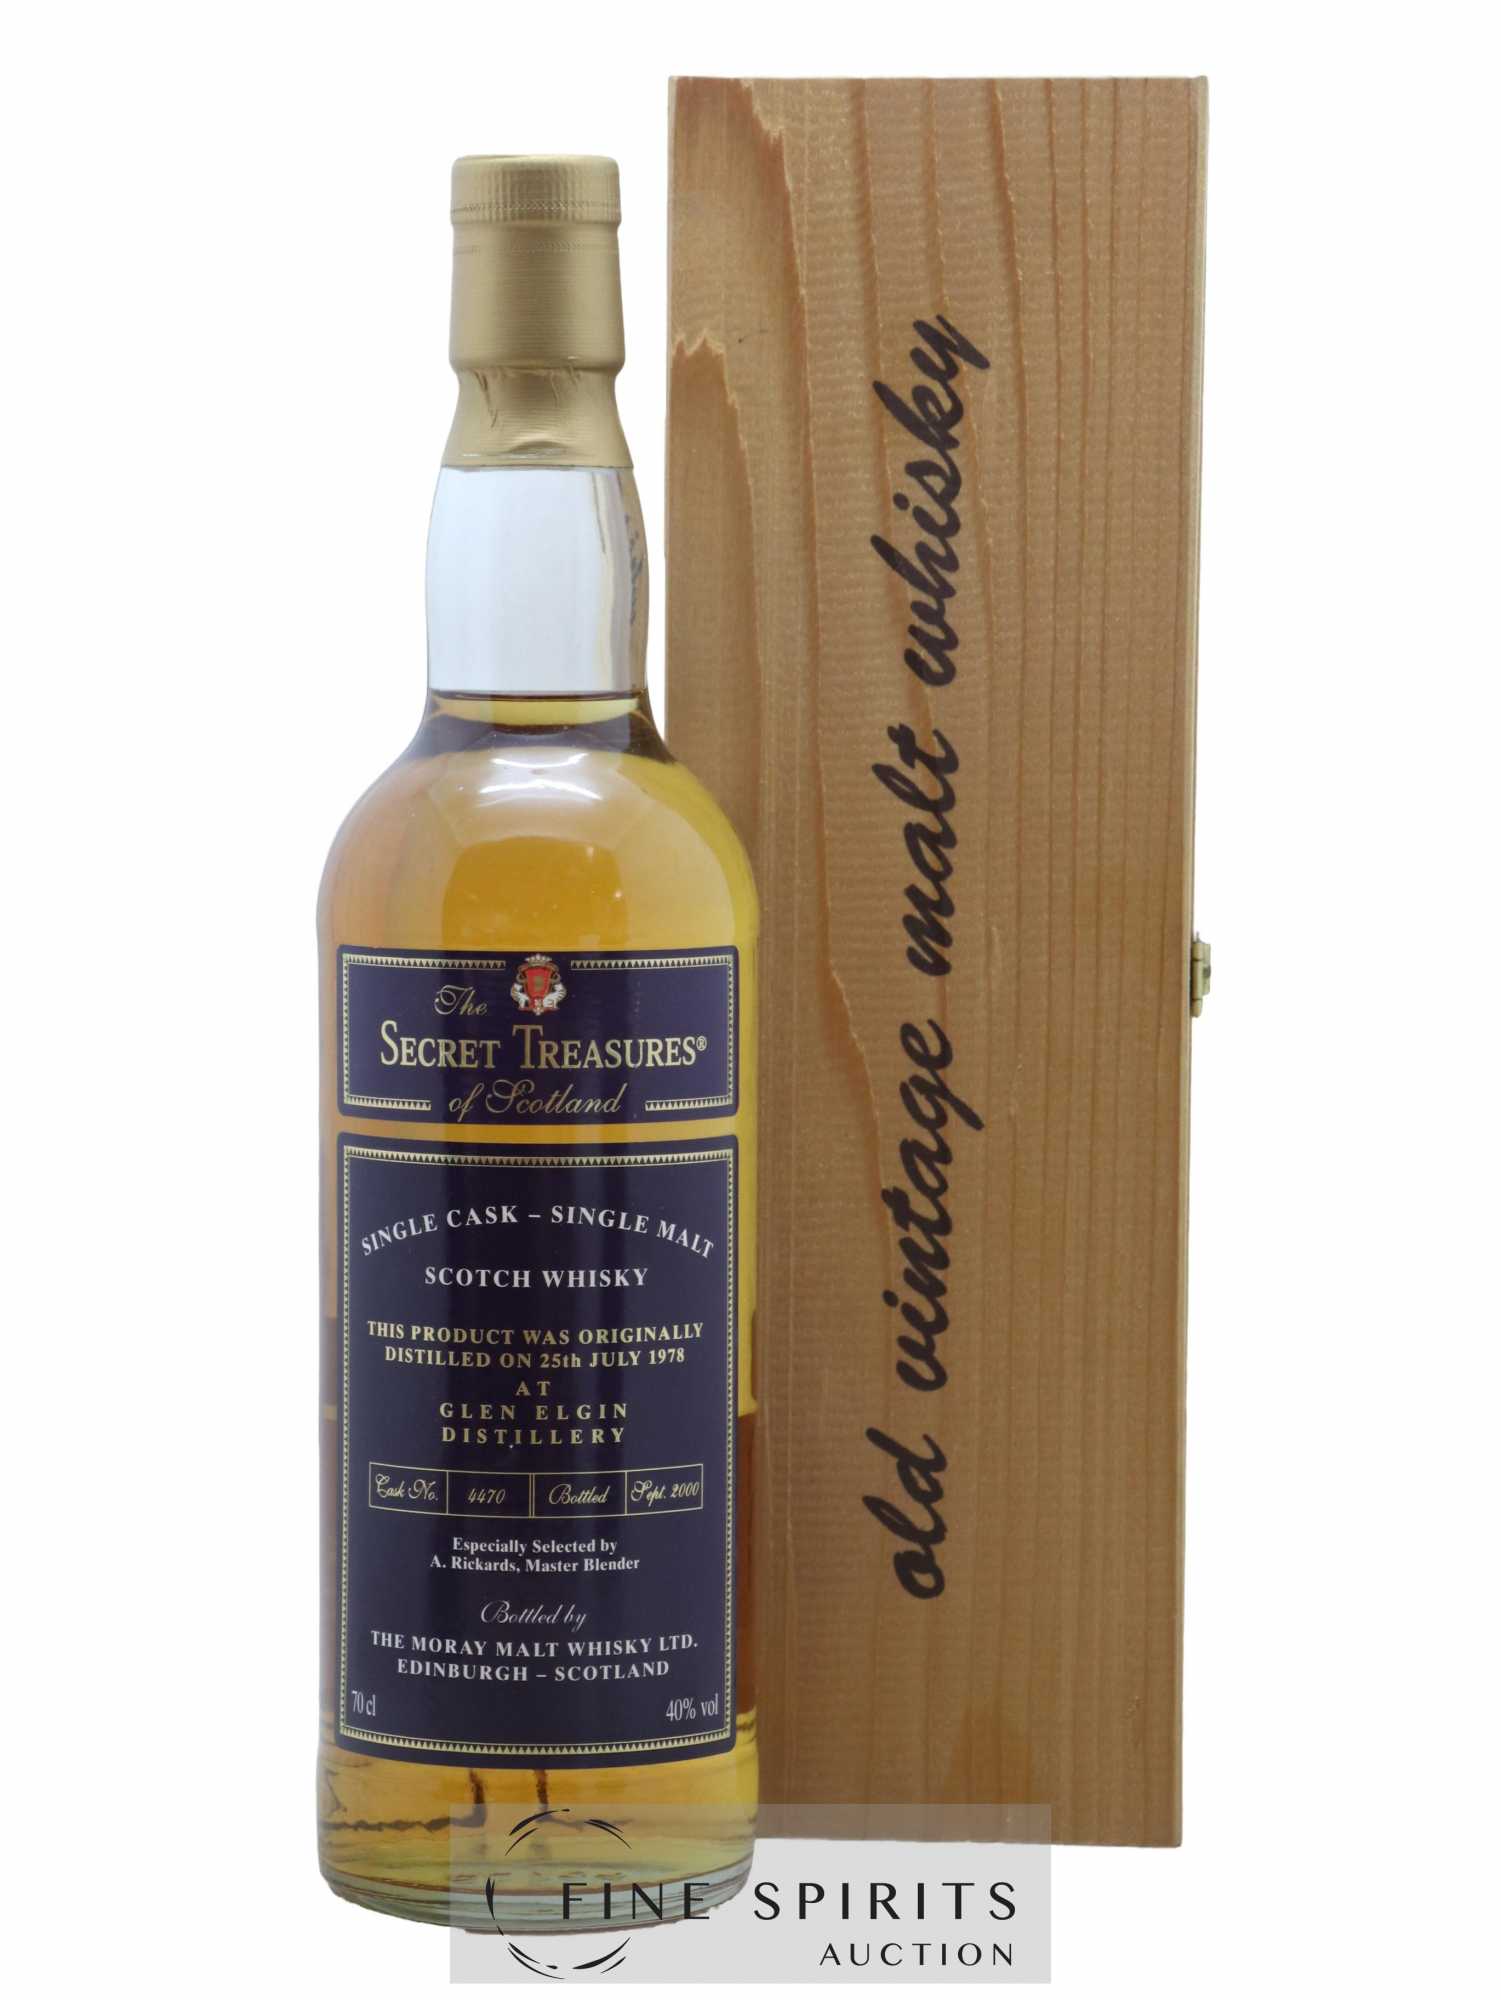 Glen Elgin 1978 The Moray Malt Whisky Ltd. Cask n°4470 - bottled 2000 Secret Treasures 